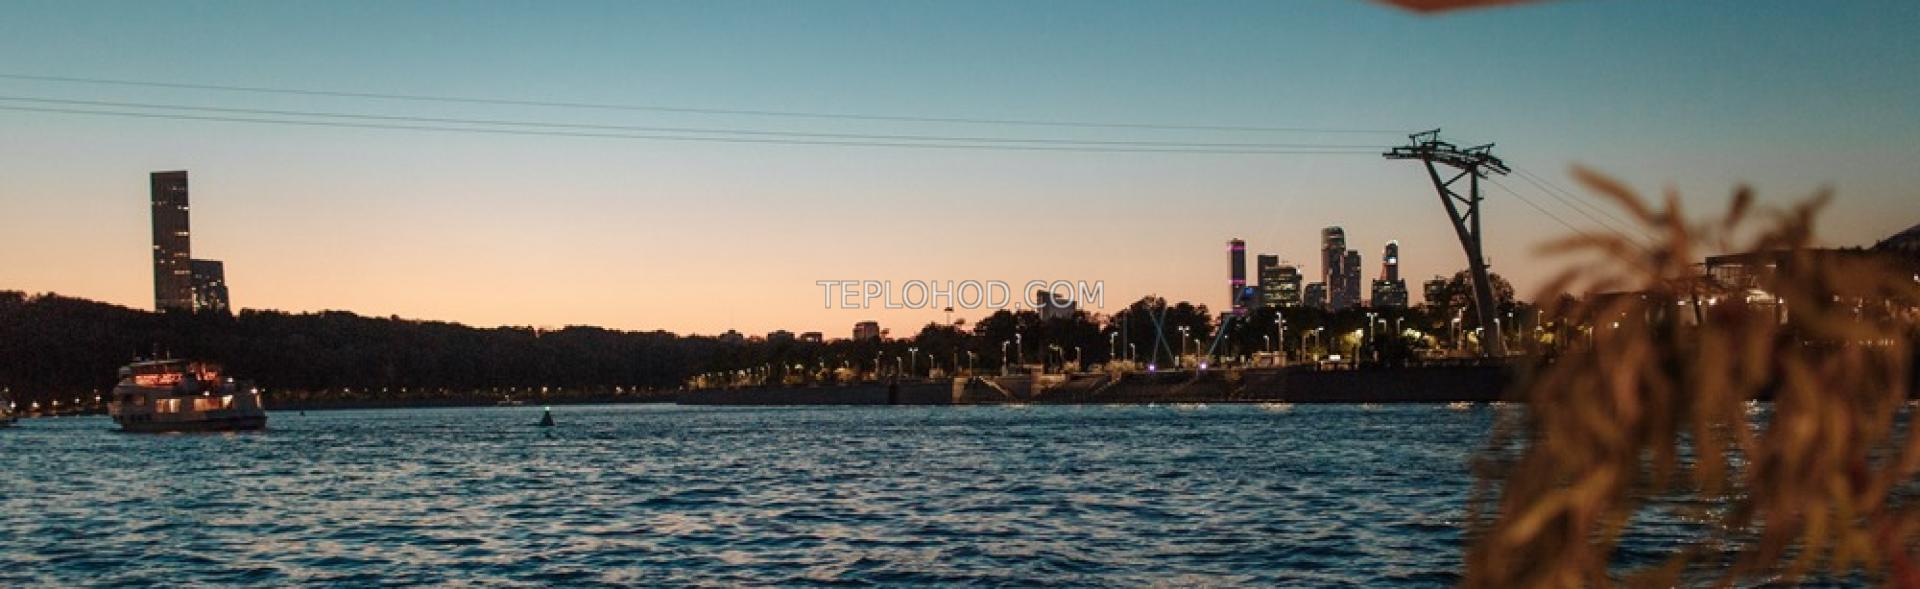 Речной круиз на теплоходе "Вояж по ночной Москве" с отправлением от Воробьевых гор или Крымского моста